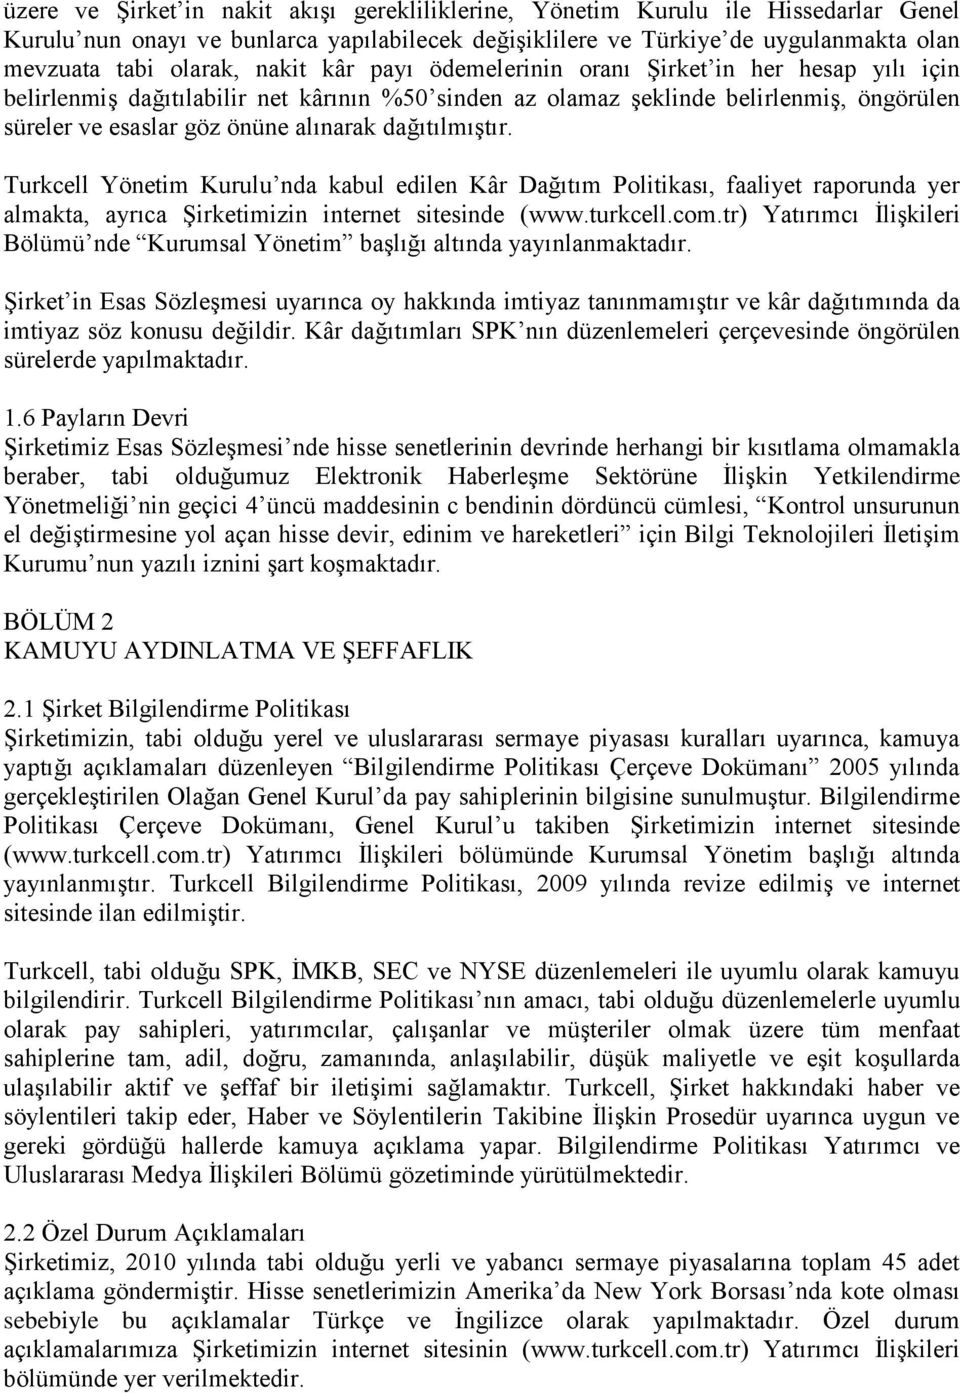 dağıtılmıştır. Turkcell Yönetim Kurulu nda kabul edilen Kâr Dağıtım Politikası, faaliyet raporunda yer almakta, ayrıca Şirketimizin internet sitesinde (www.turkcell.com.